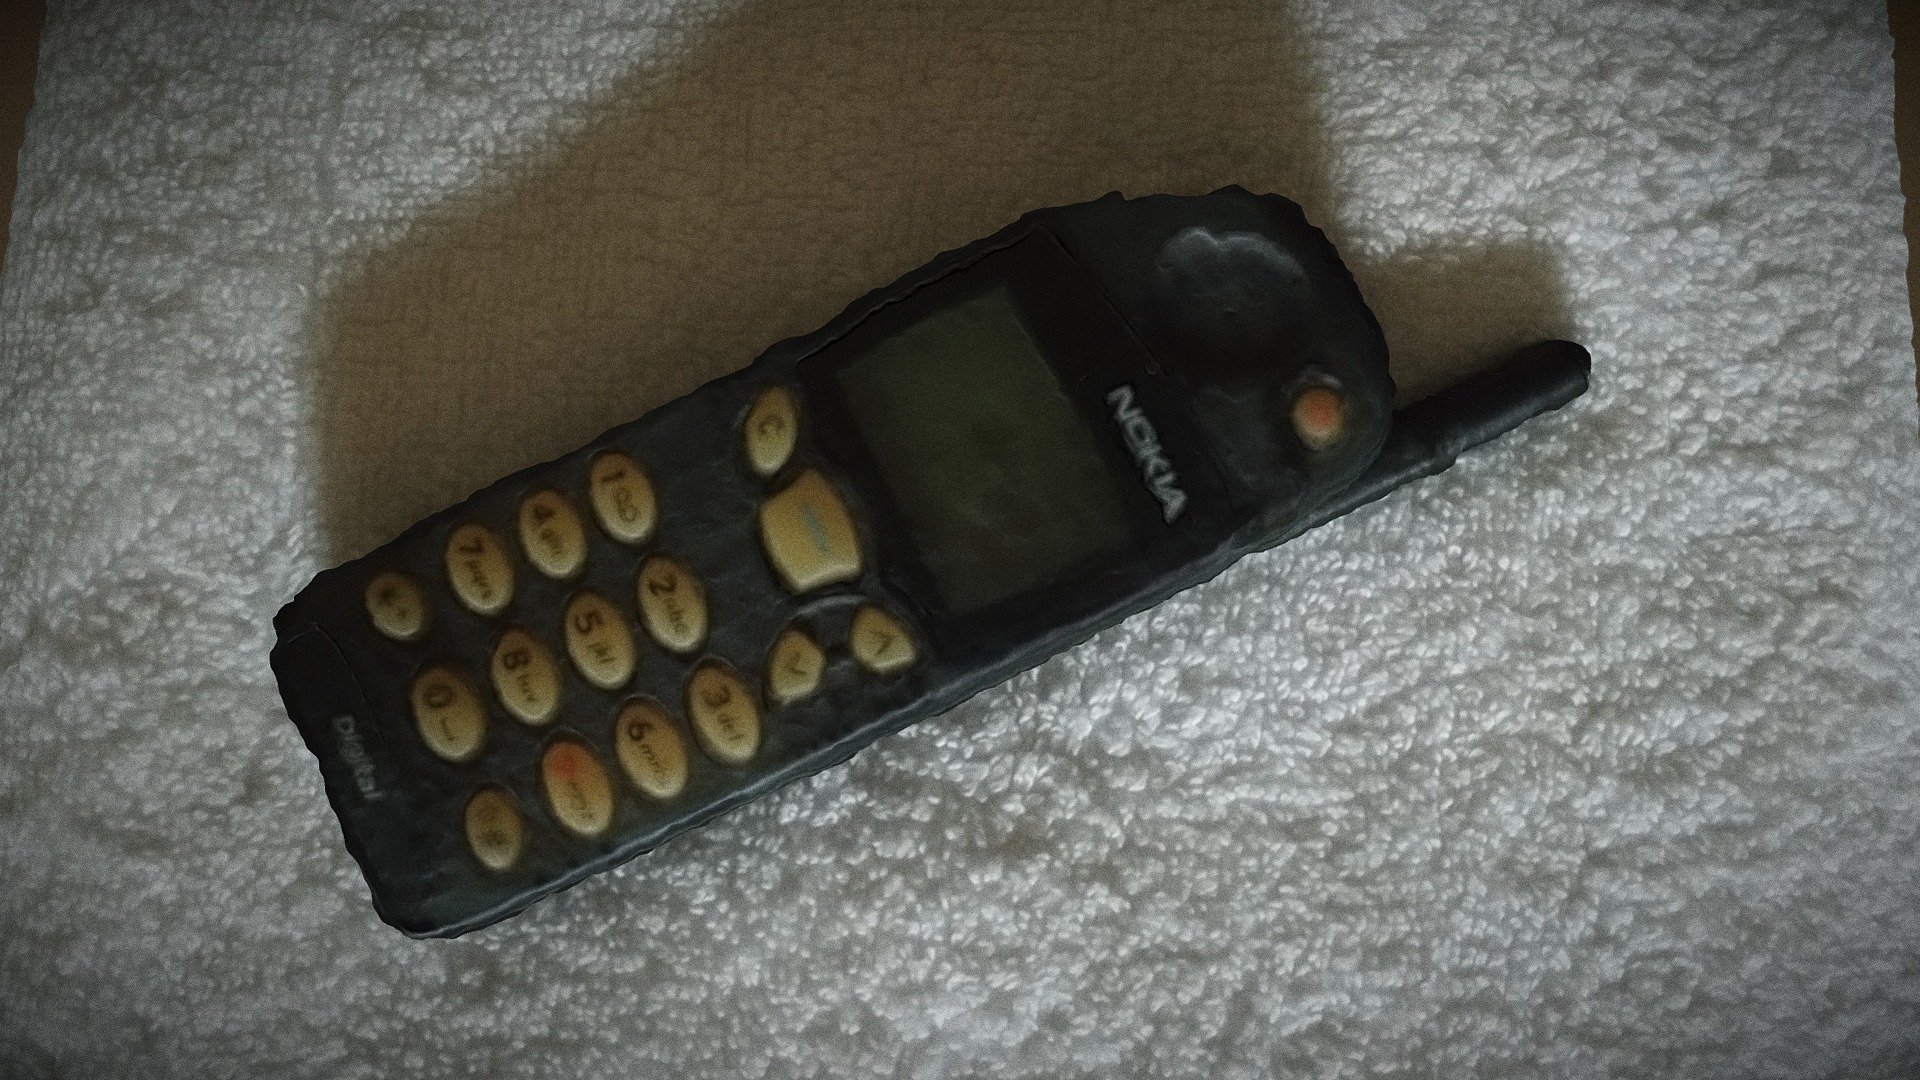 Old Nokia 5110